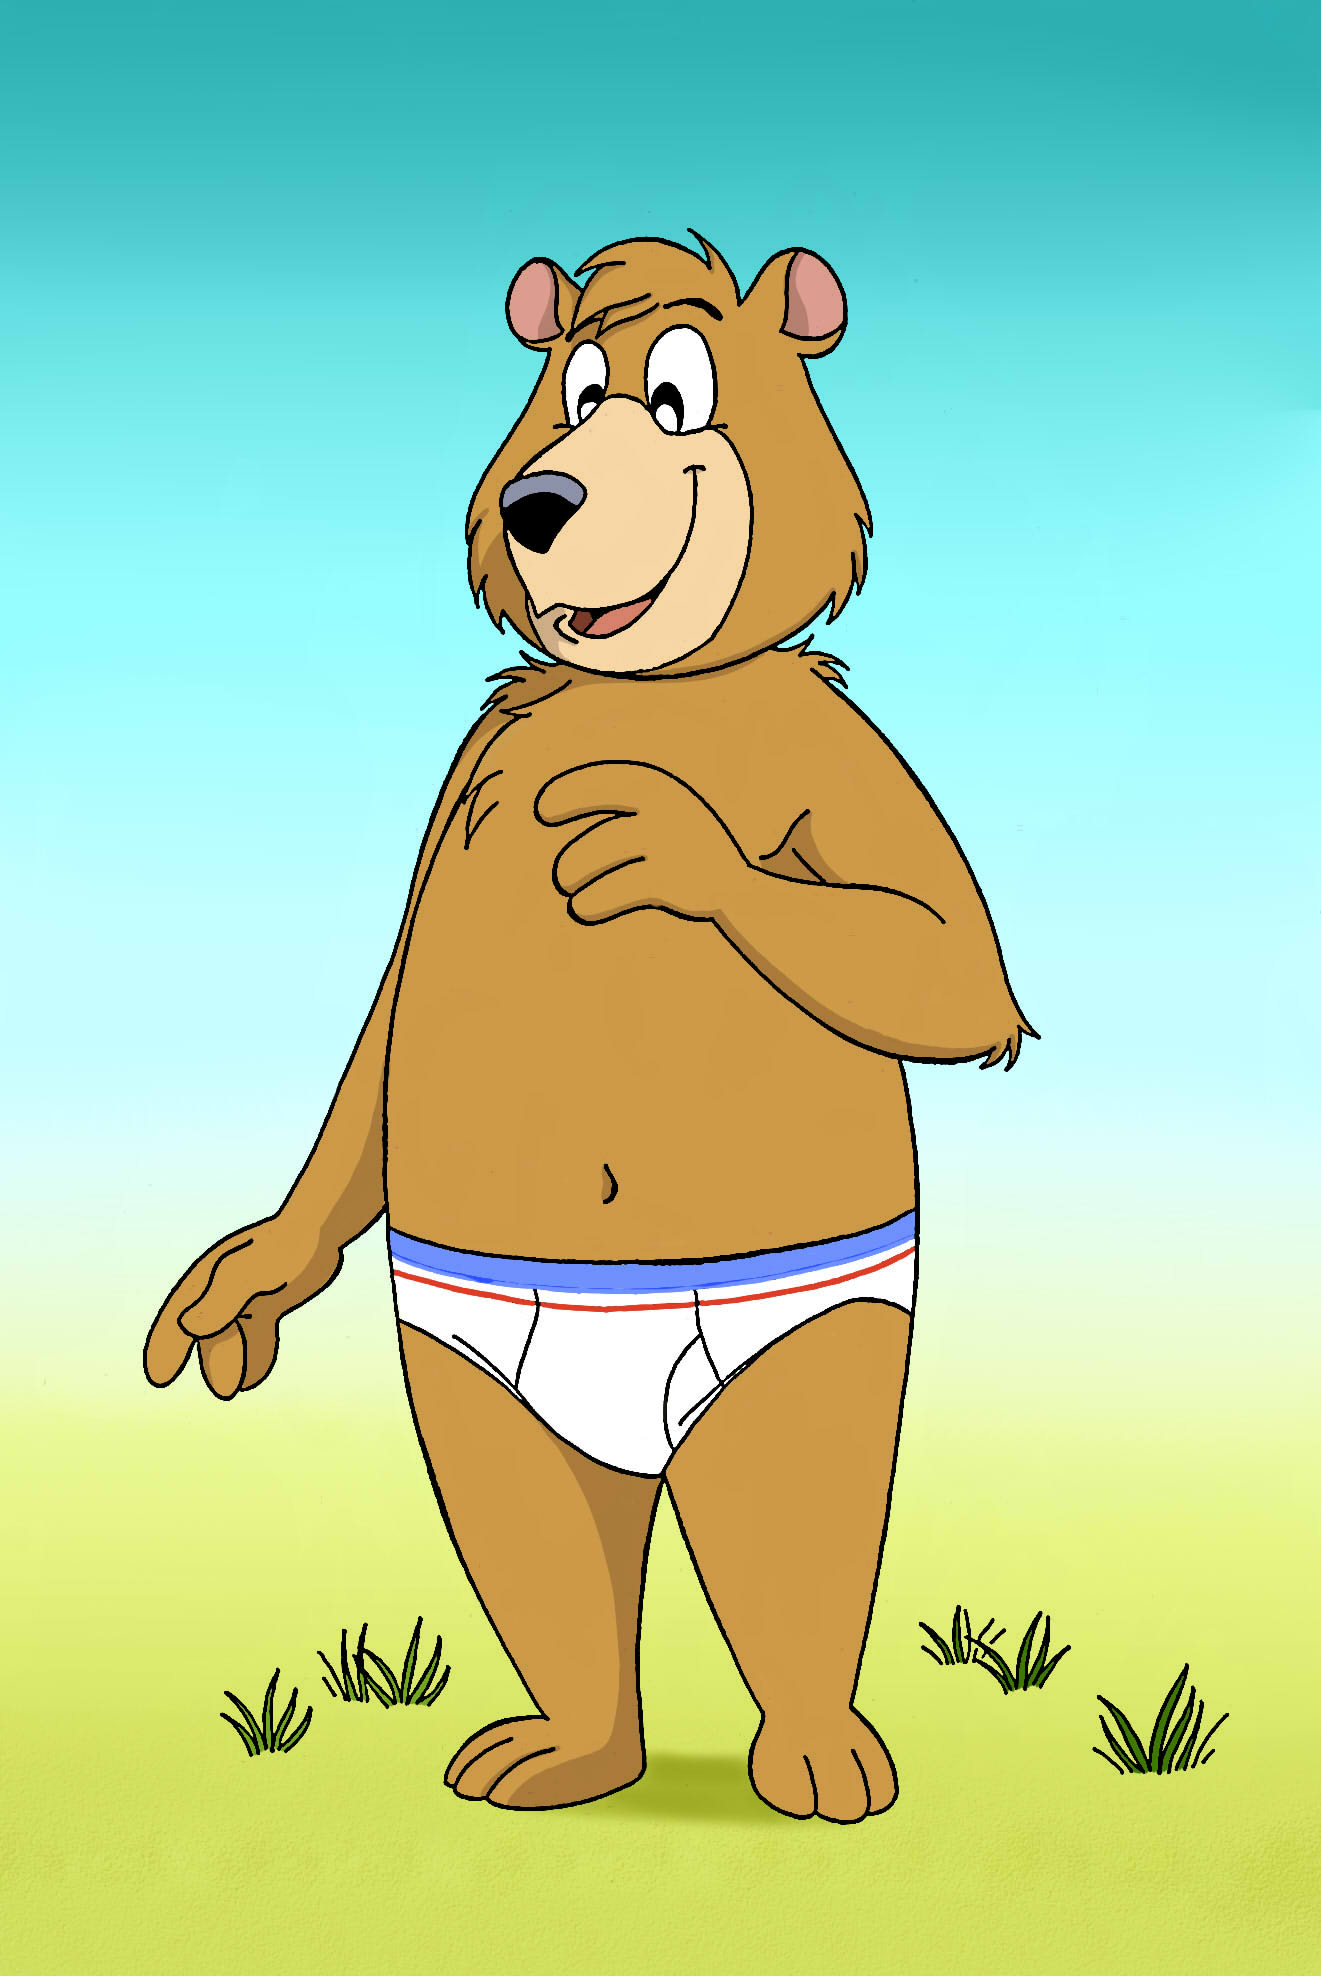 Bear Panties